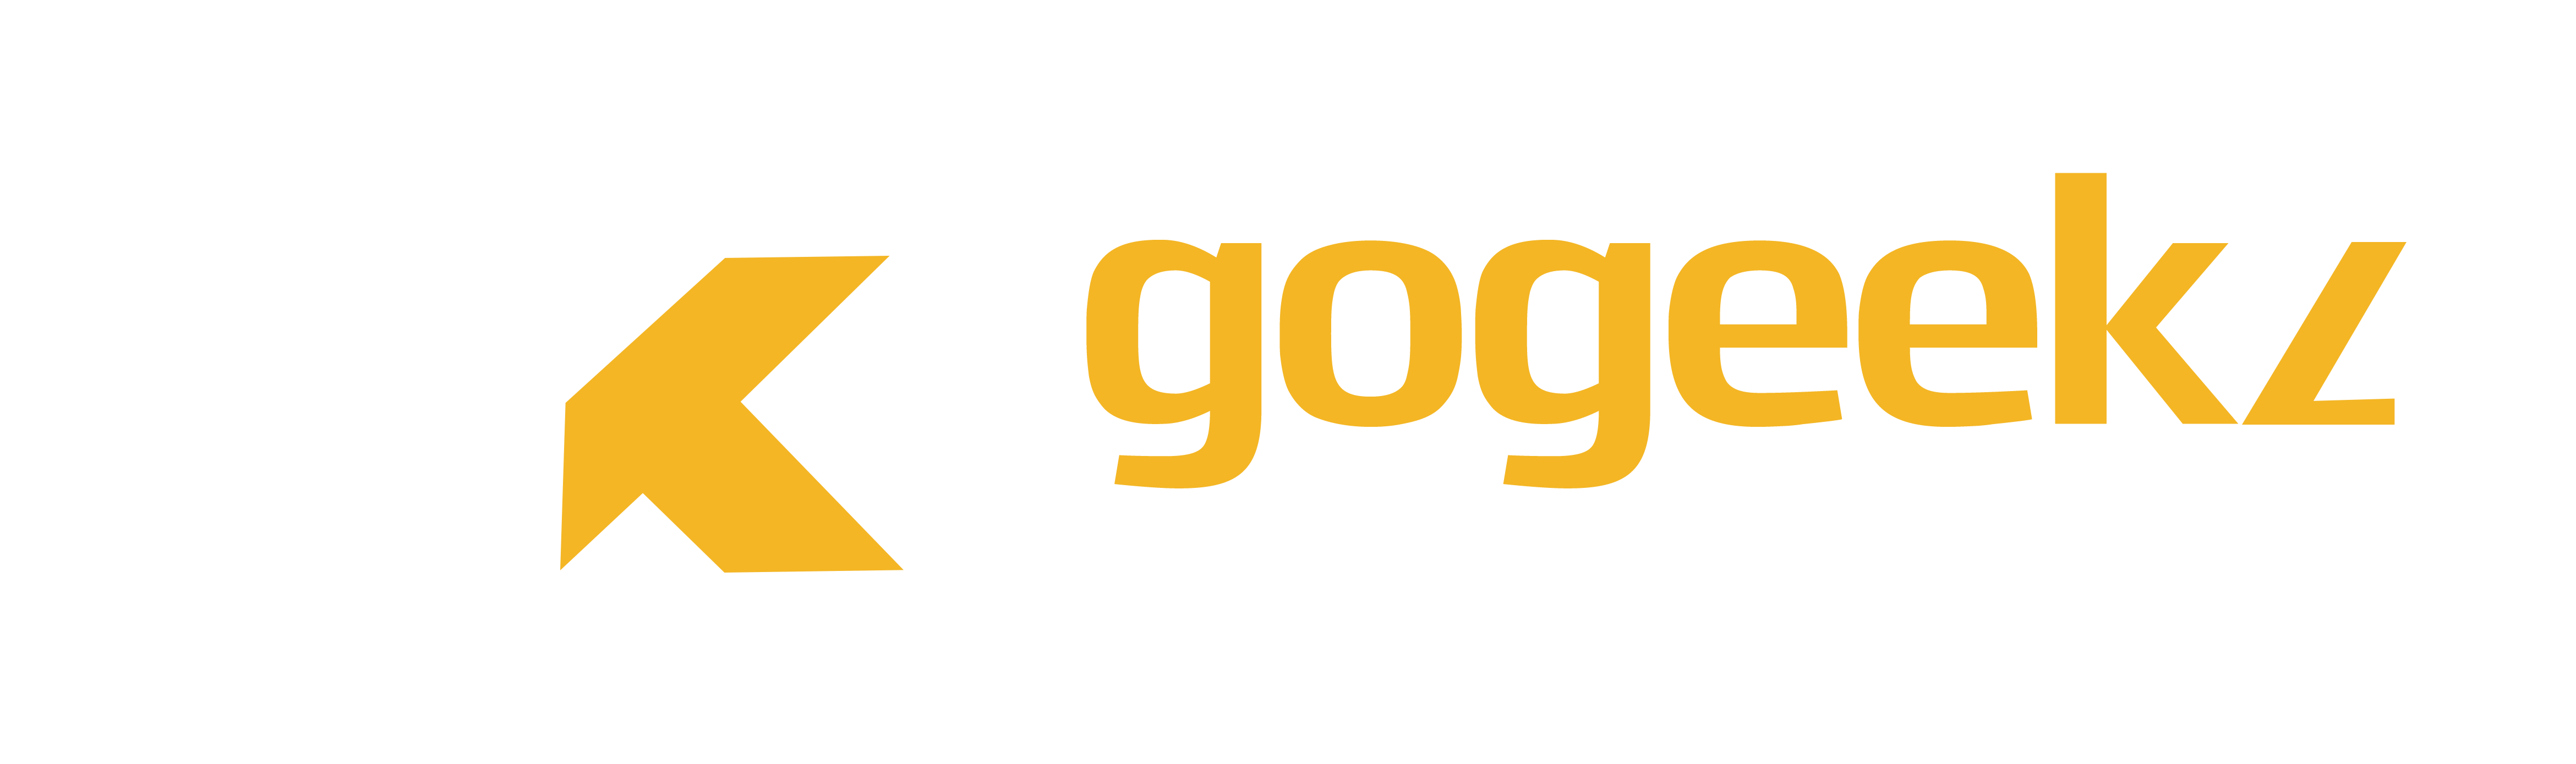 GoGeekz